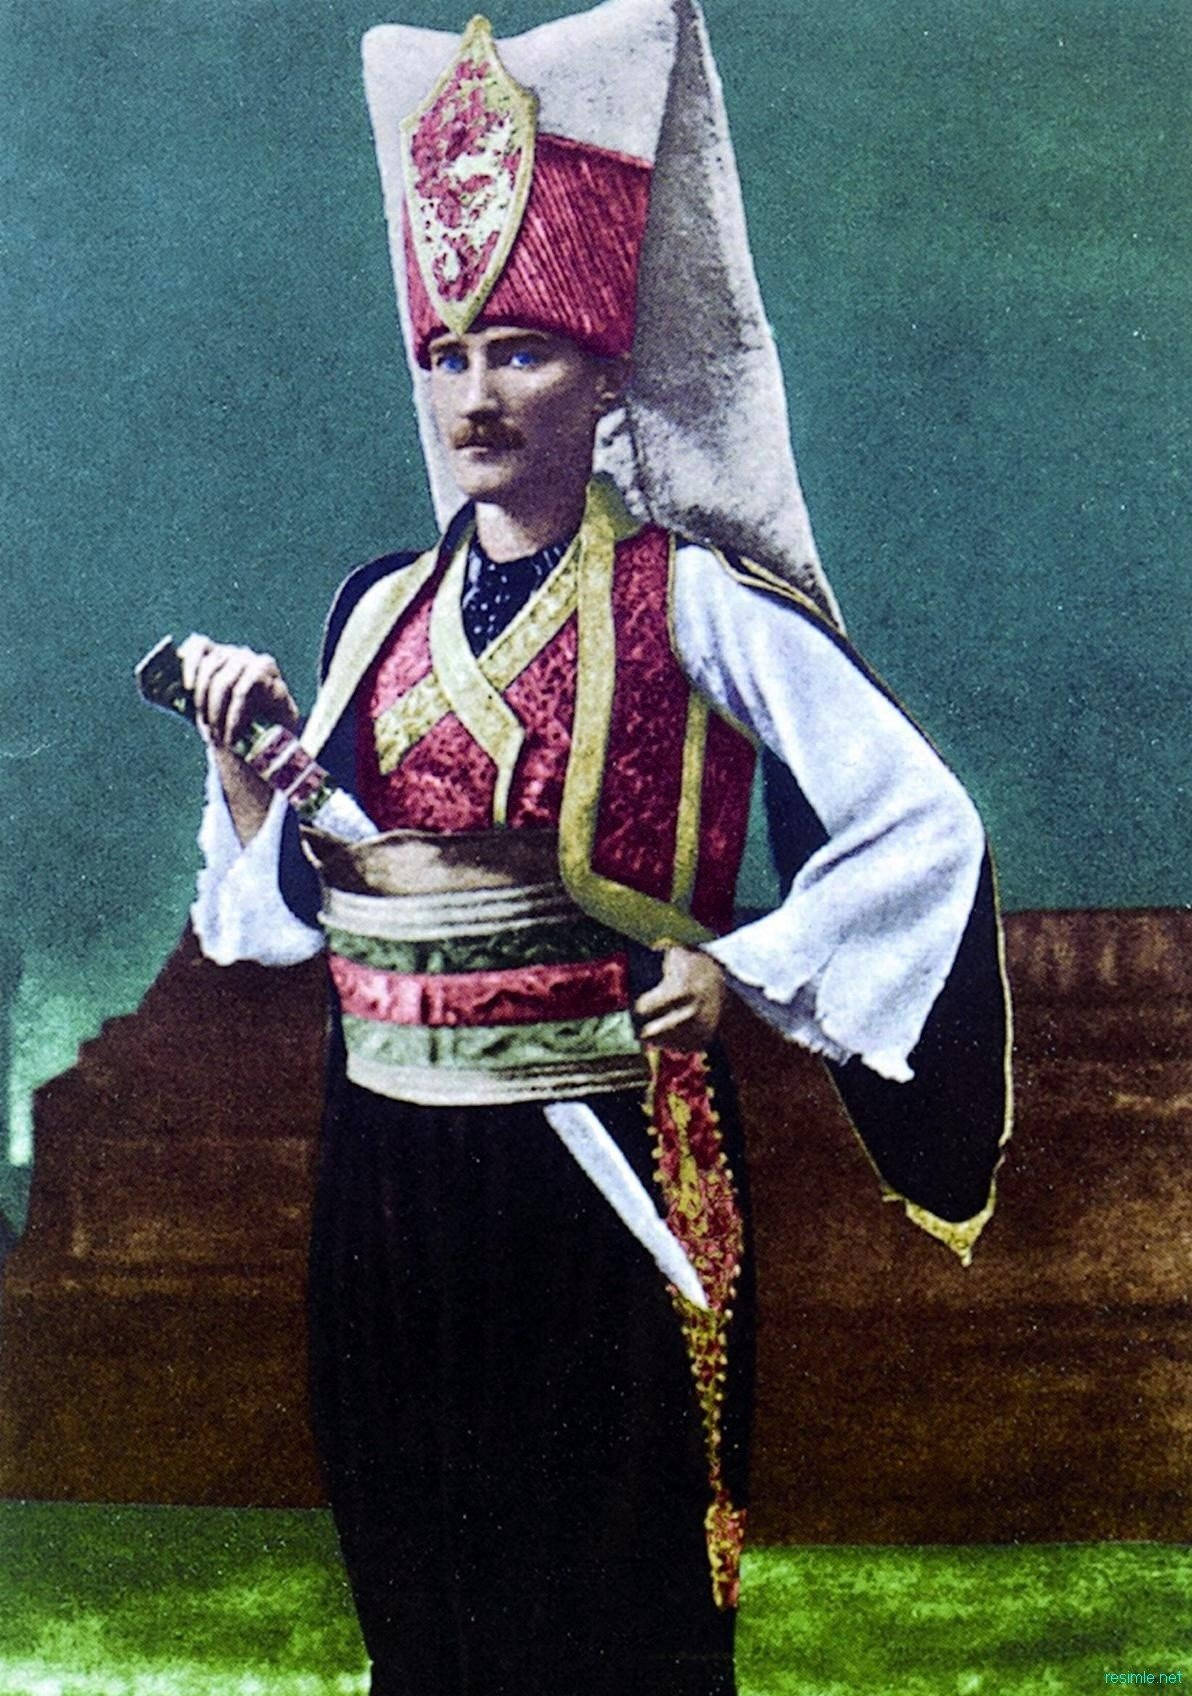 Ataturk i et janitsaruniform. Wallpaper